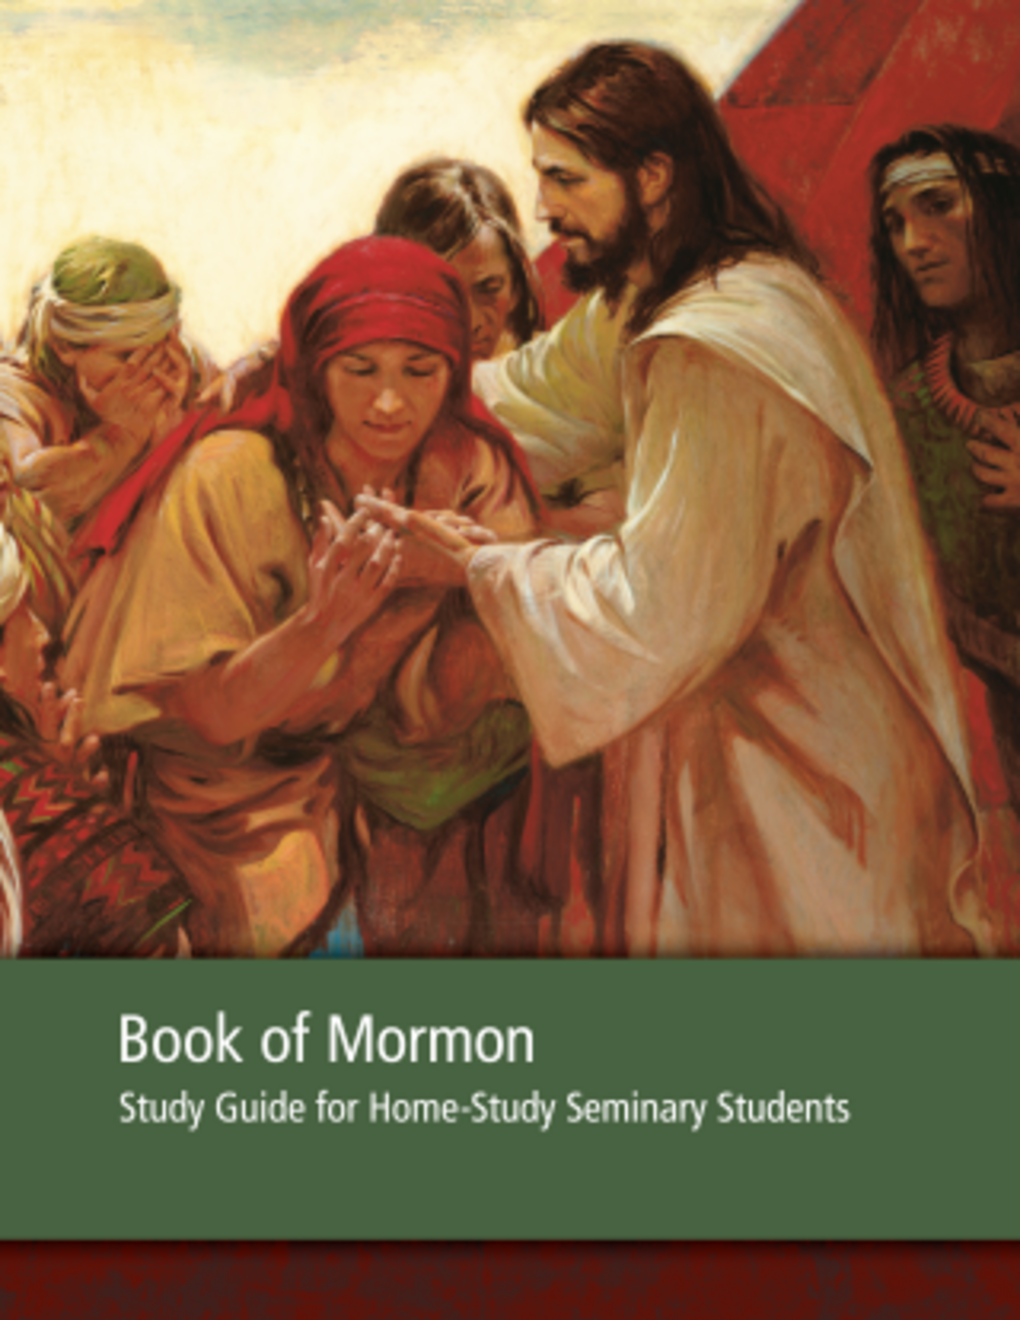 Mormonin kirja, opiskeluopas kotiopiskeluseminaarin oppilaille – 2013